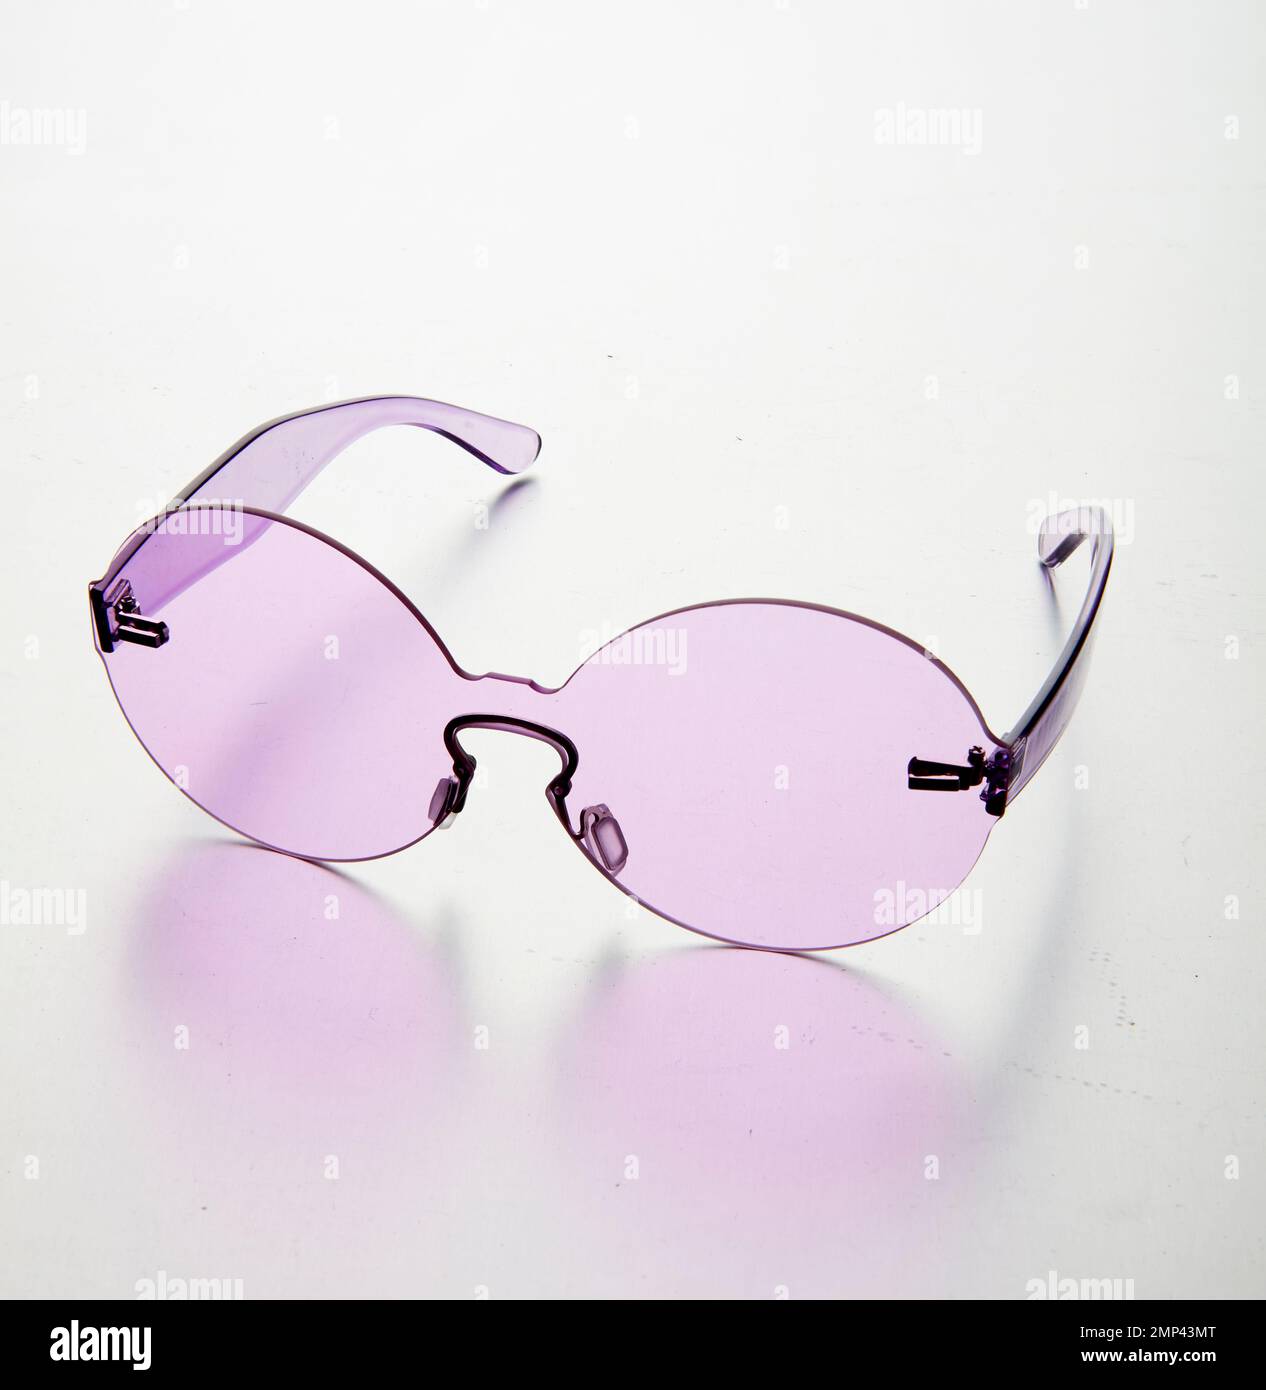 lunettes de soleil en plastique coloré article de mode tendance design simple designer shades groovy années 70 seventies style hip hippy rond iconique lunettes intenses Banque D'Images